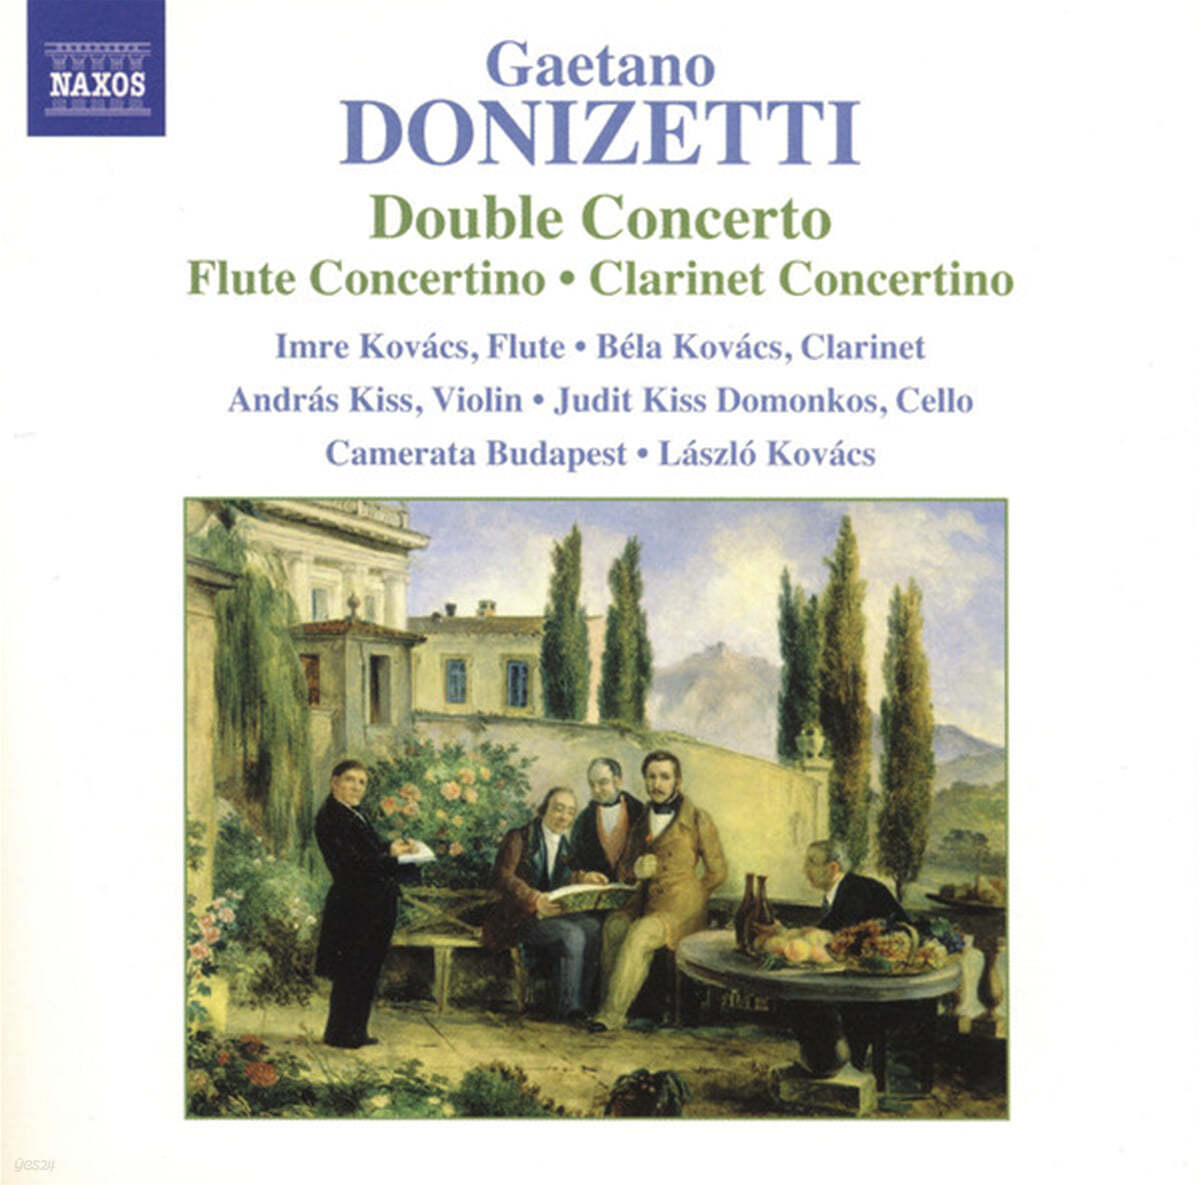 Camerata Budapest 도니제티: 이중 협주곡, 플루트 콘체르티노, 클라리넷 콘체르티노 (Donizetti : Double Concerto, Flute Concertino, Clarinet Concertino) 